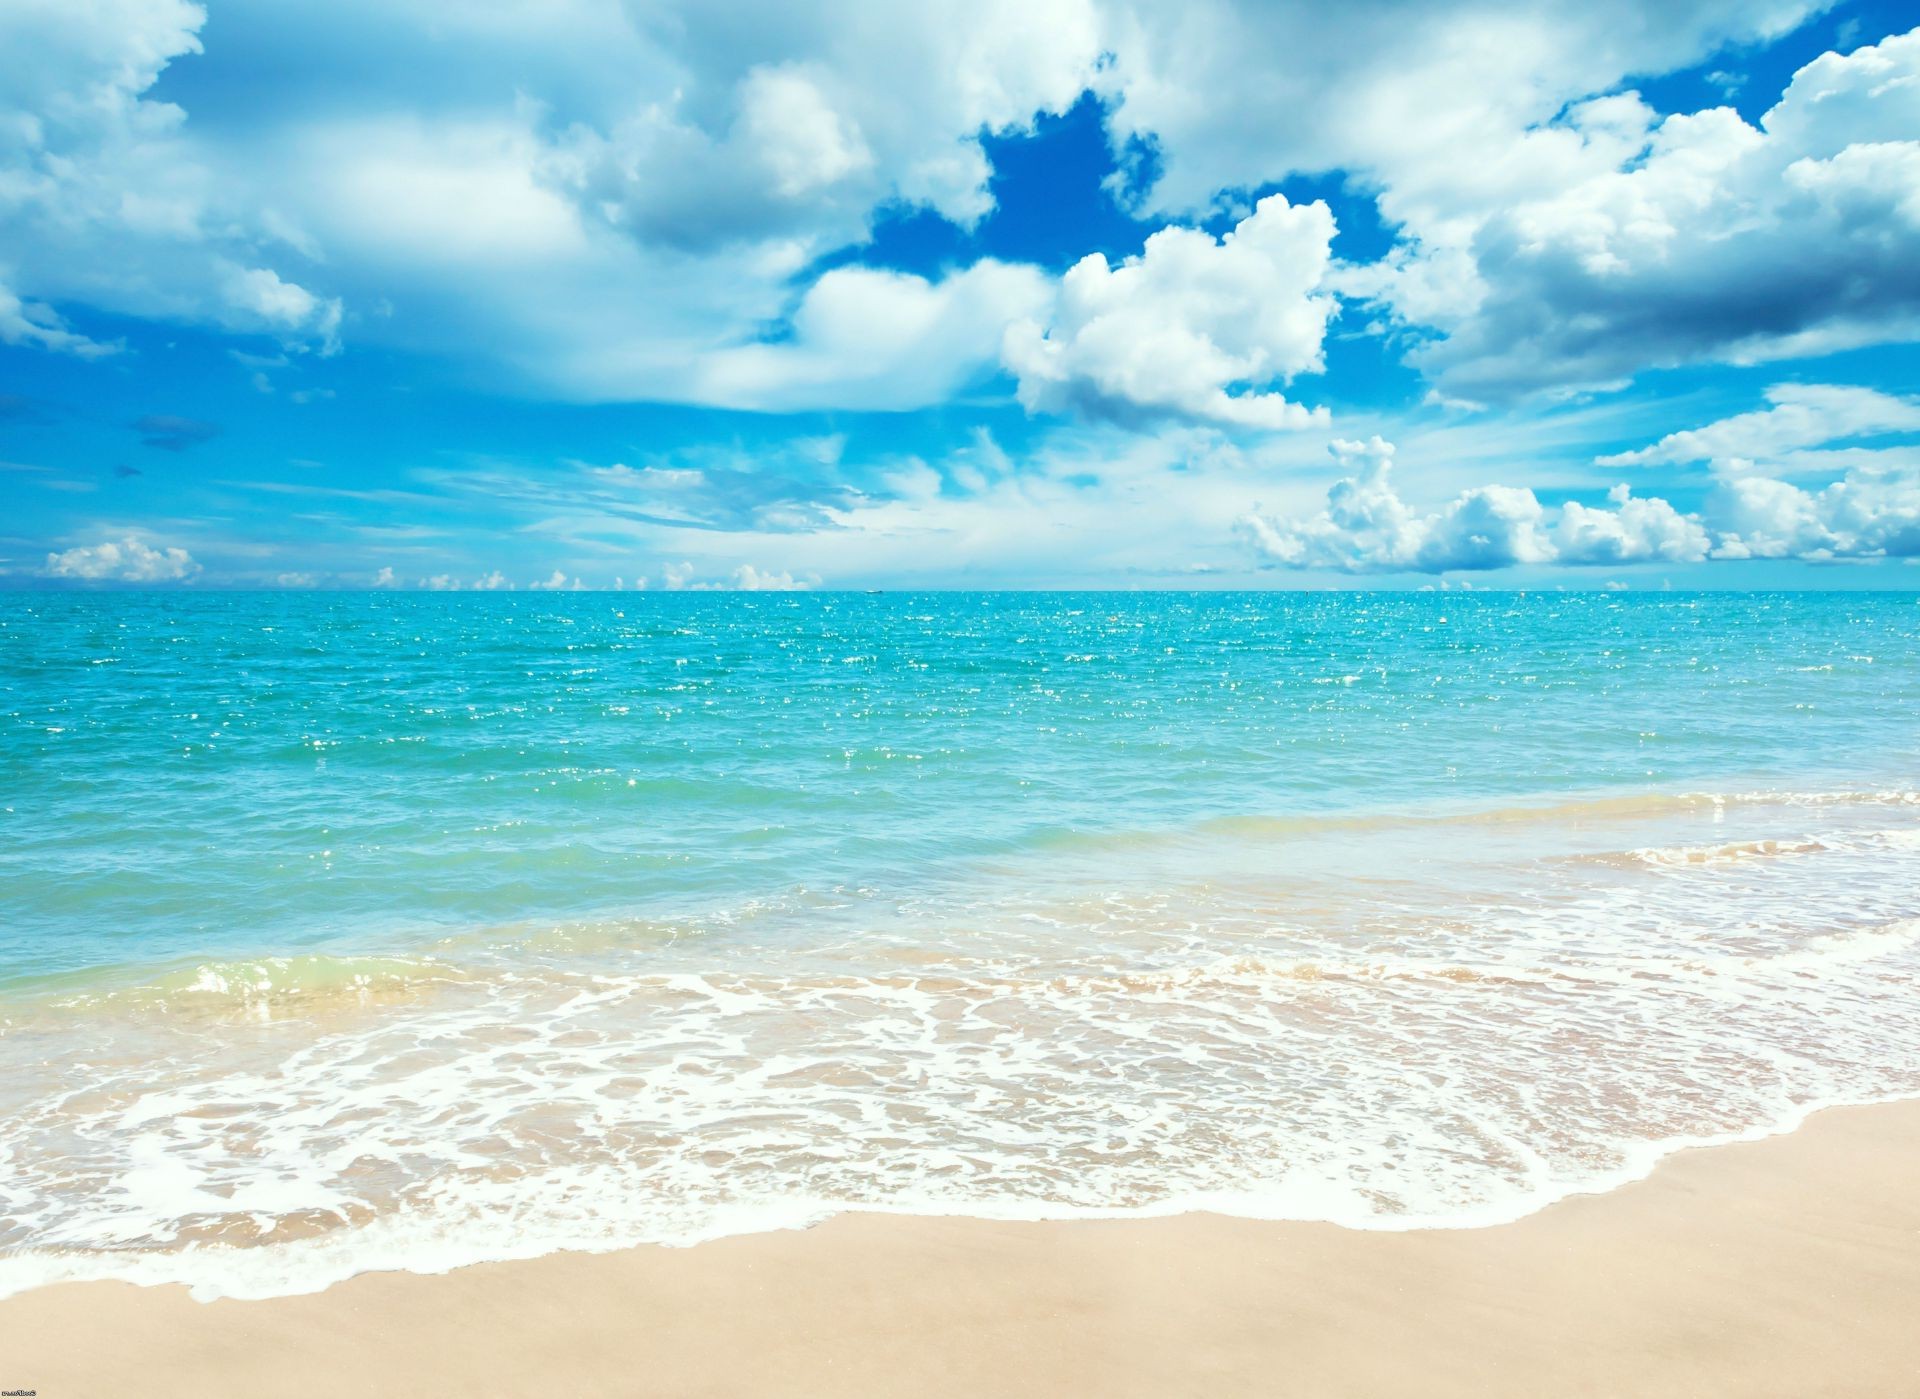 море и океан песок воды пляж прибой тропический лето солнце хорошую погоду путешествия море океан моря пейзаж релаксация небо идиллия горячая волна остров